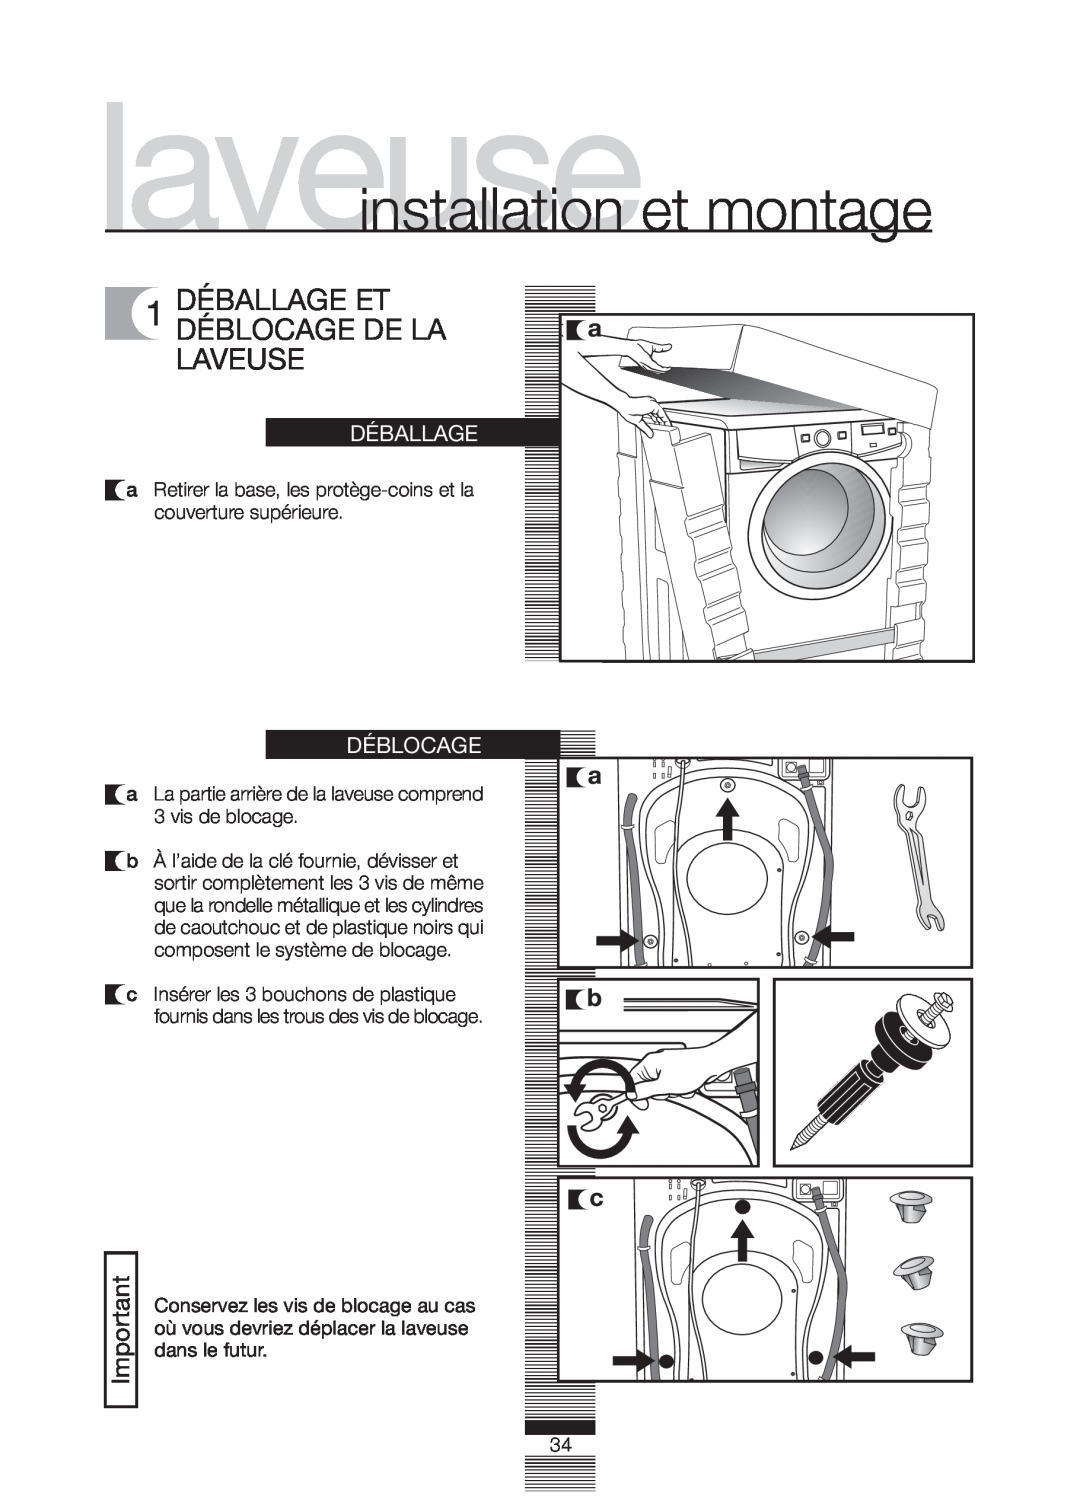 Fagor America FA-5812 X manual laveuseinstallation et montage, 1 DÉBALLAGE ET DÉBLOCAGE DE LA LAVEUSE, Déballage, Déblocage 